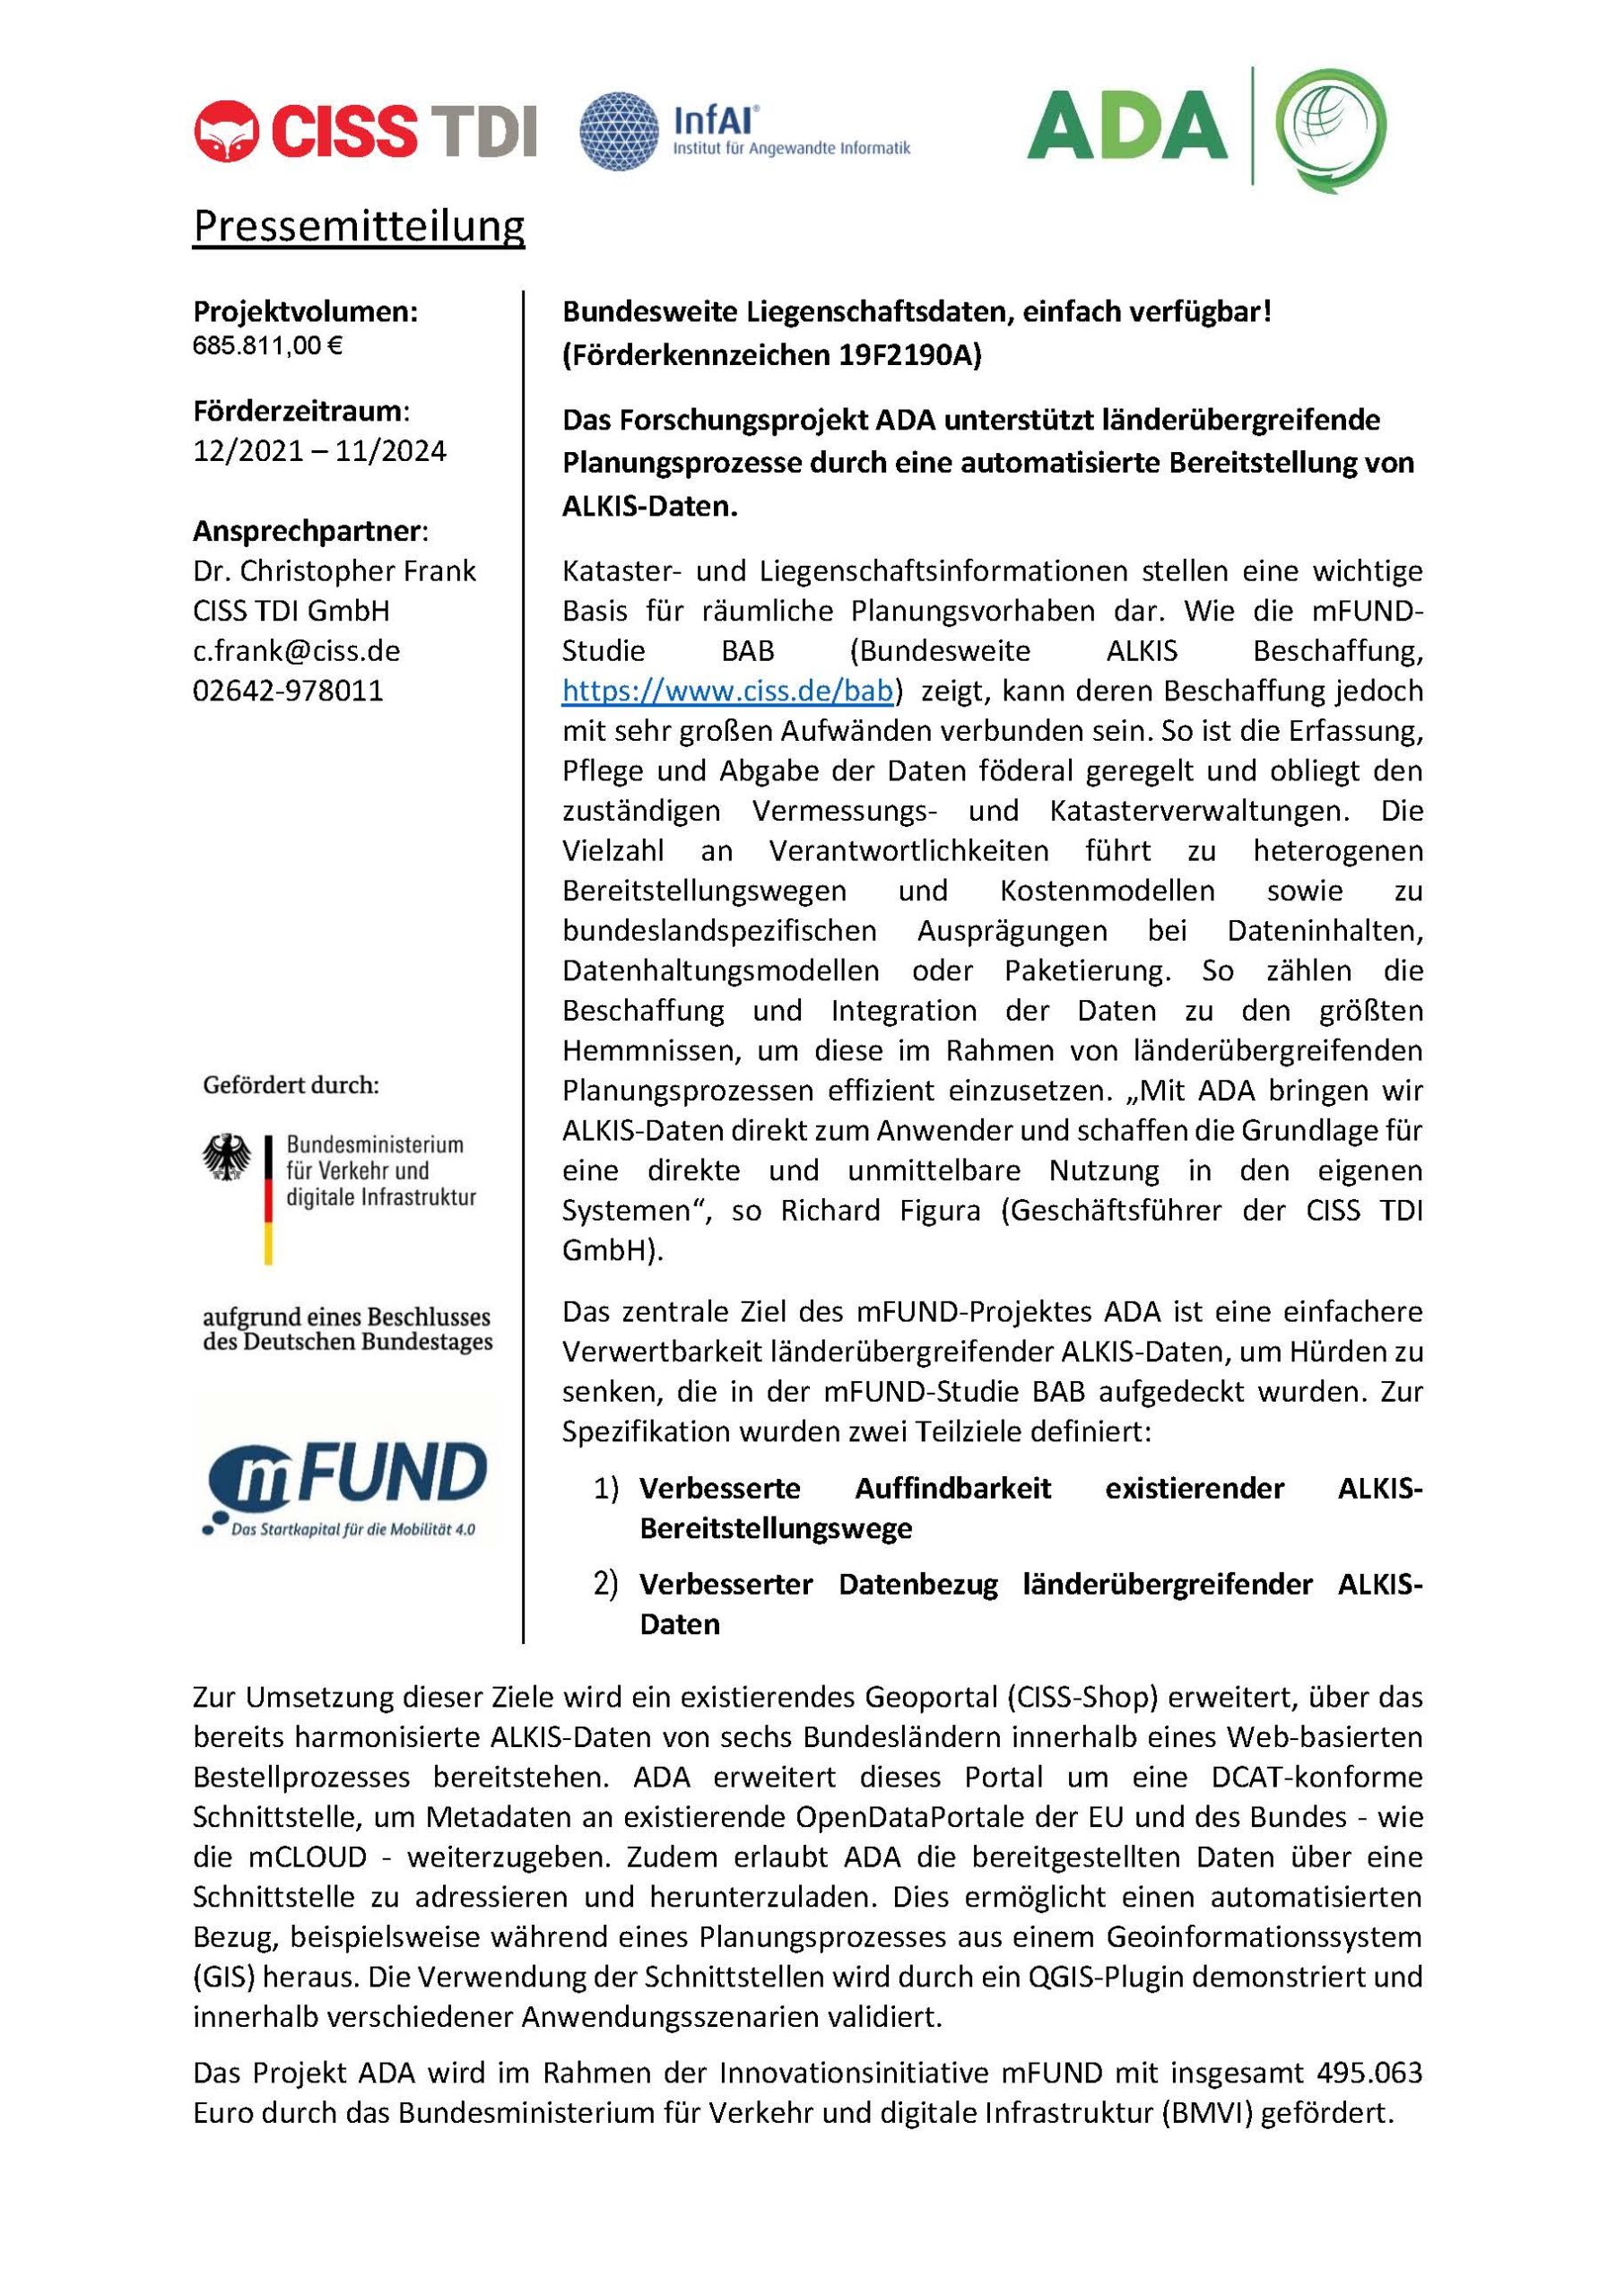 2021-12-08-Pressemitteilung_Projektstart_ADA_BMVI_ueberarbeitet_RF_CFR_v2_Seite_1